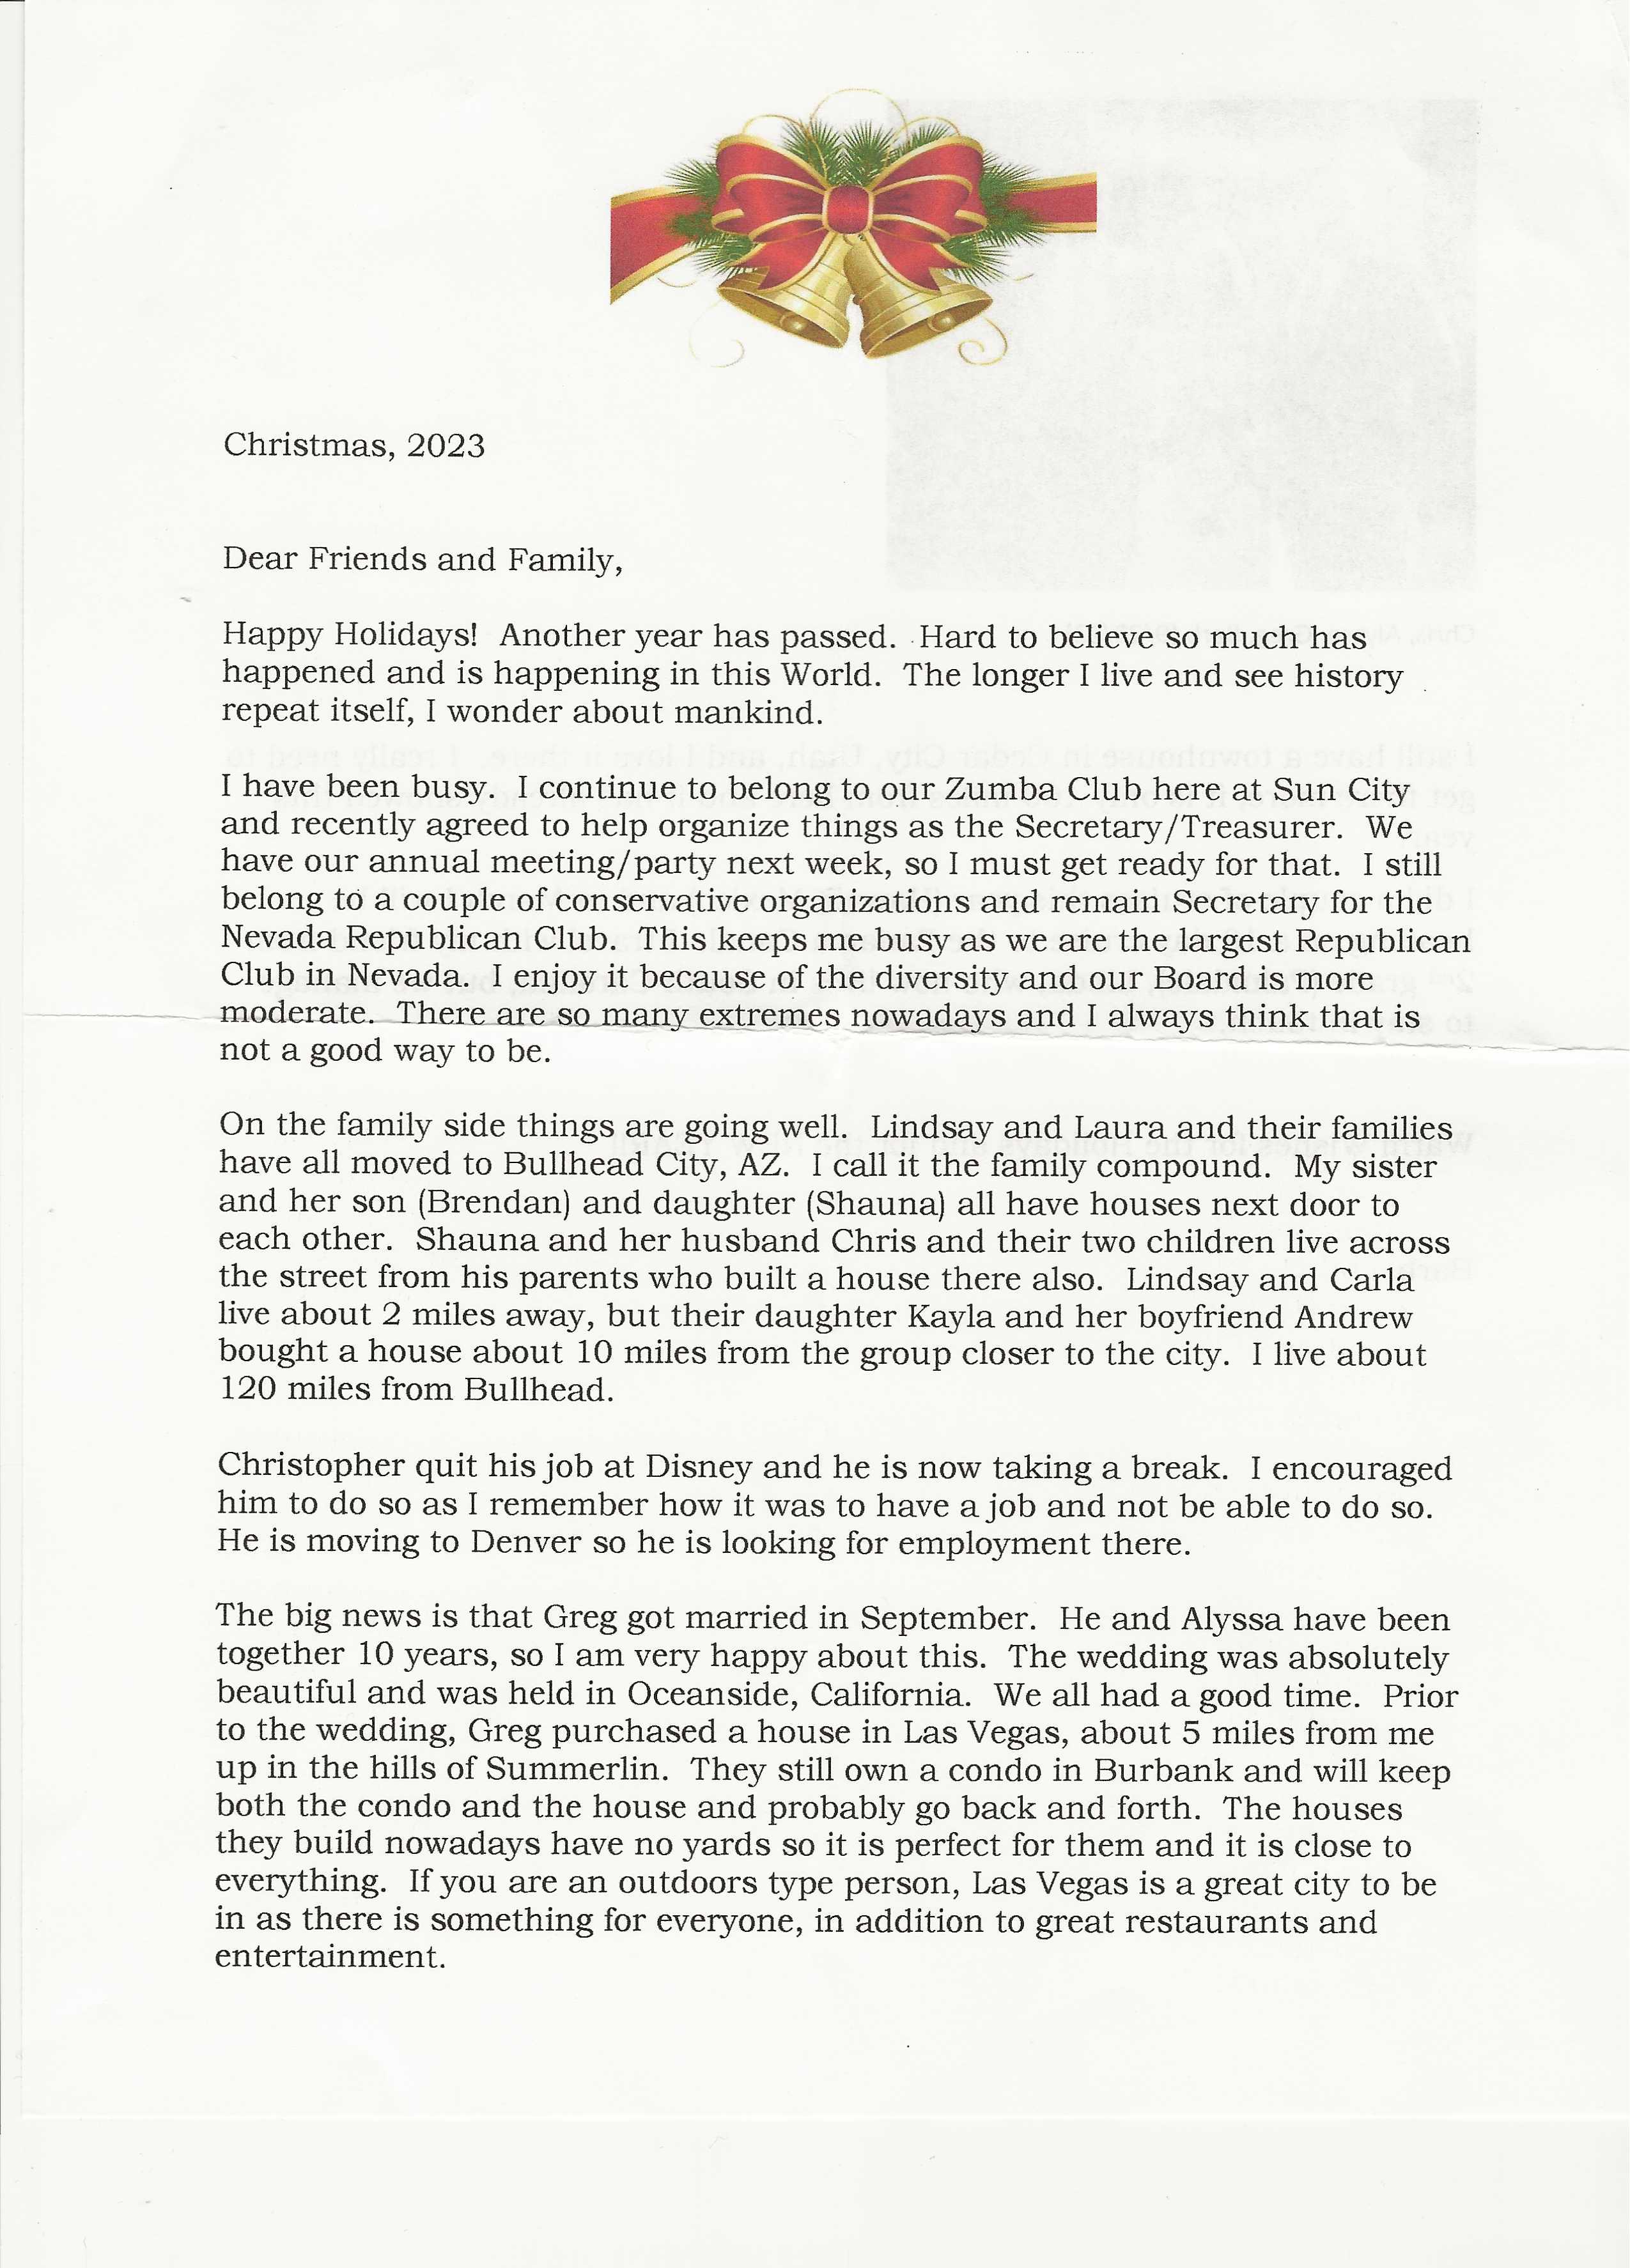 Barbara's 2023 Christmas Letter